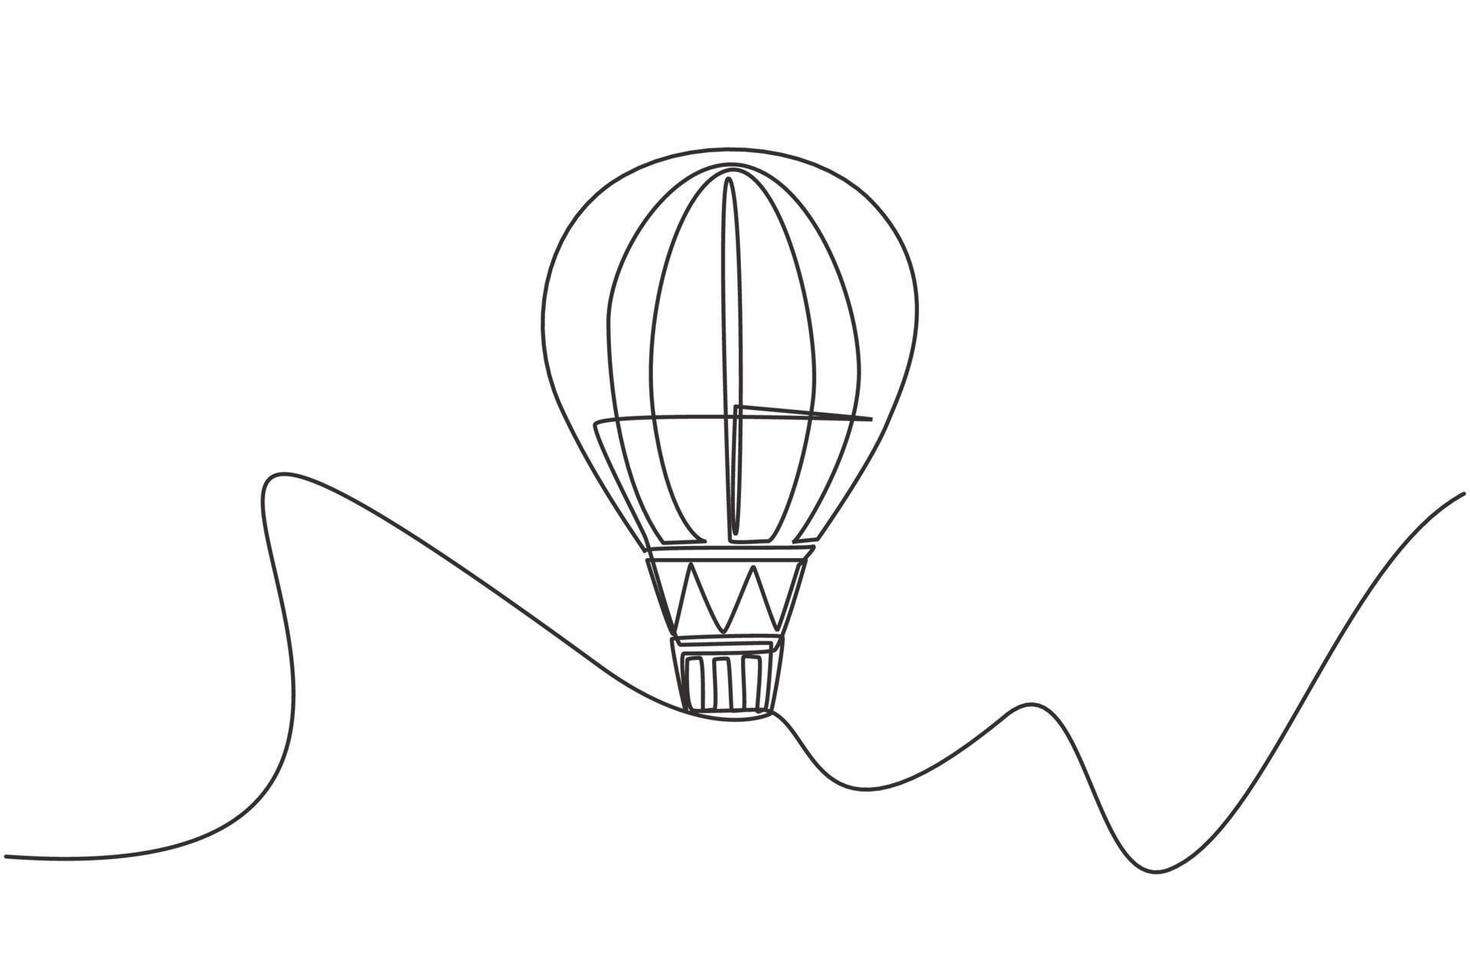 Einzelzeichnung eines Heißluftballons mit Streifenmuster und einem Passagierkorb, der hoch in den Himmel fliegt. Urlaubserlebnis. moderne durchgehende Linie zeichnen Design-Grafik-Vektor-Illustration. vektor